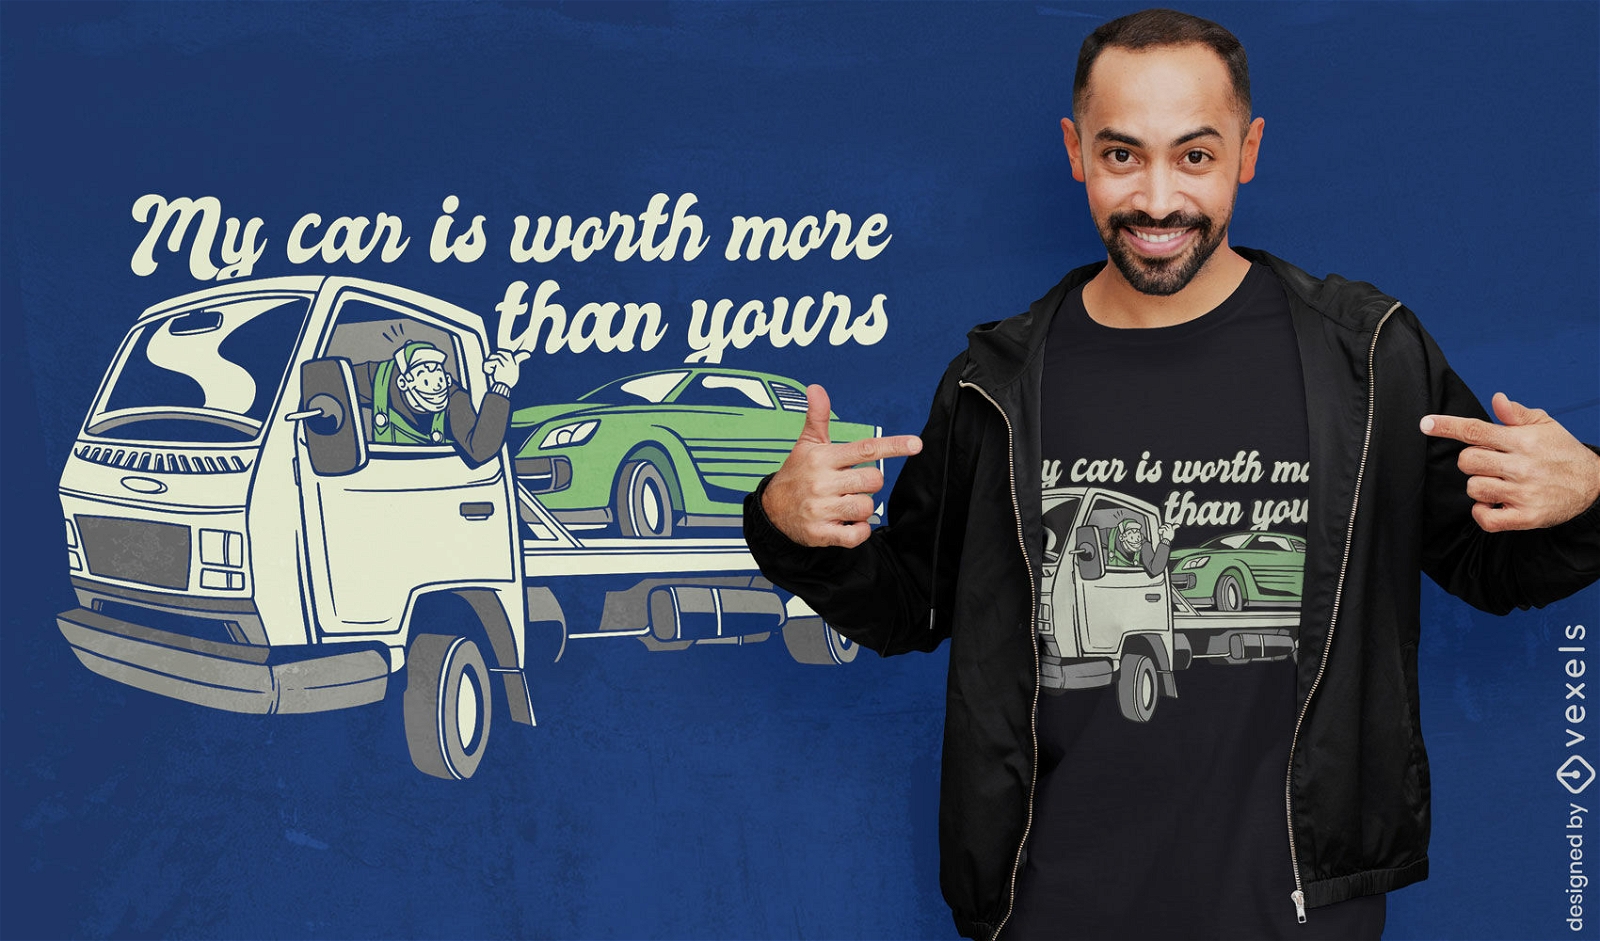 REQUEST Tow truck t-shirt design